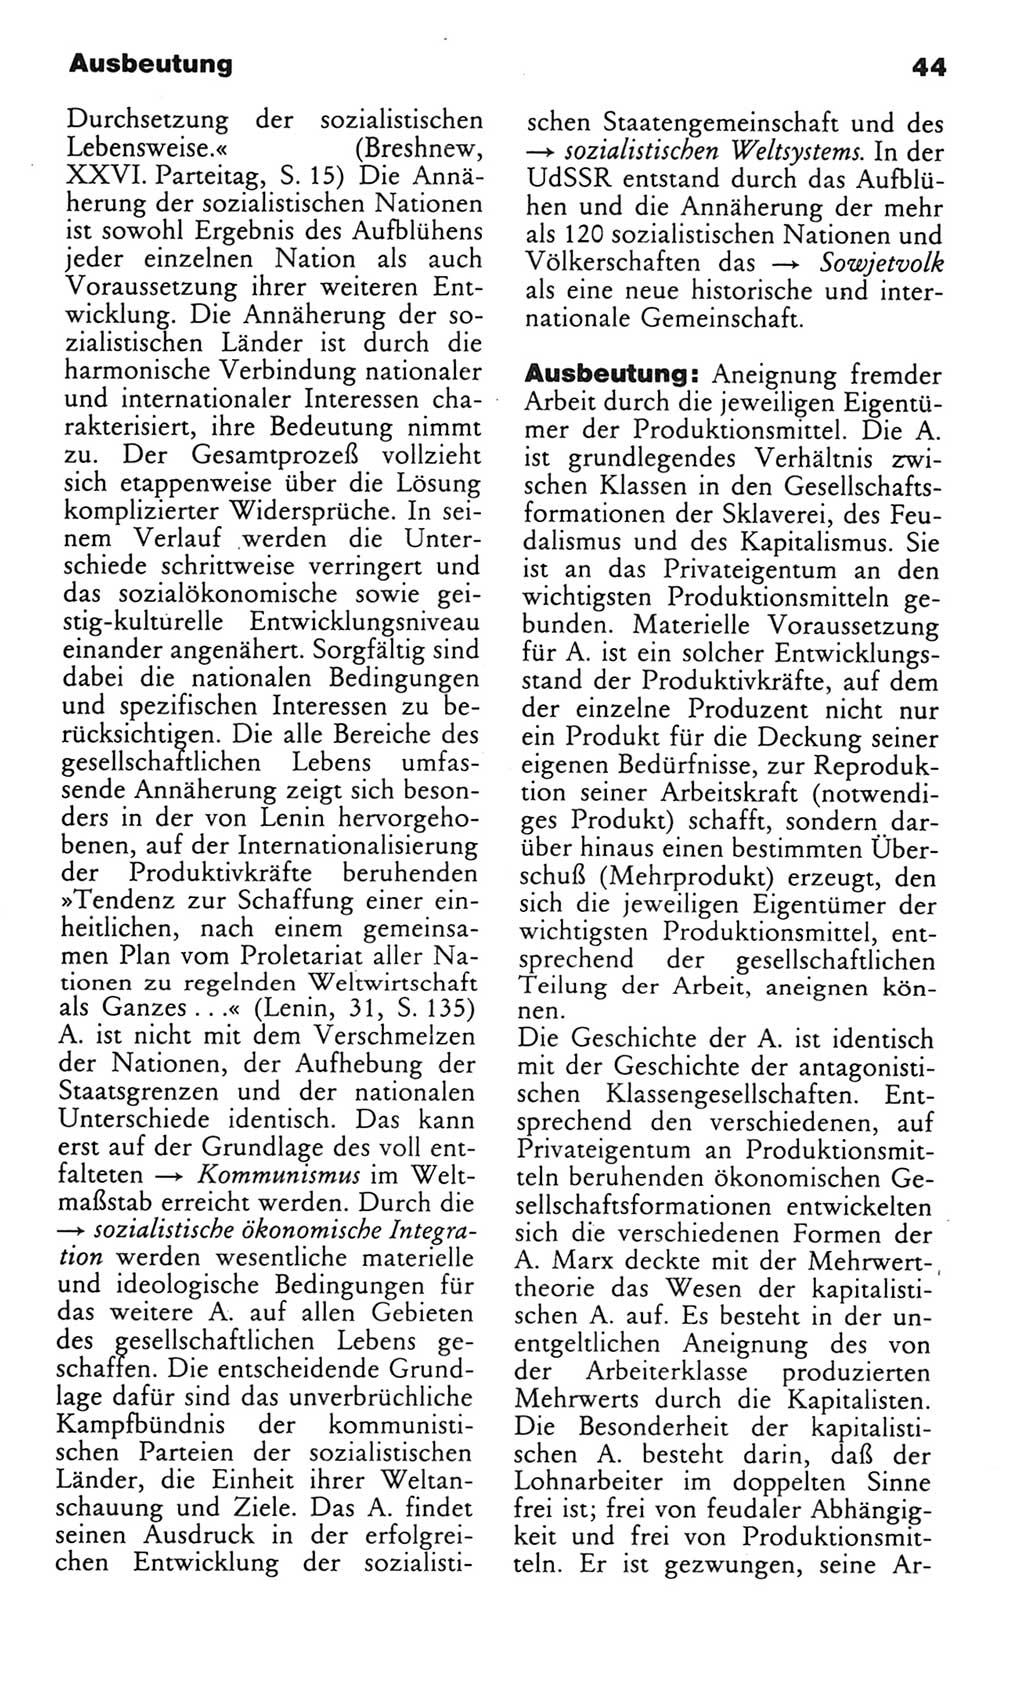 Wörterbuch des wissenschaftlichen Kommunismus [Deutsche Demokratische Republik (DDR)] 1982, Seite 44 (Wb. wiss. Komm. DDR 1982, S. 44)